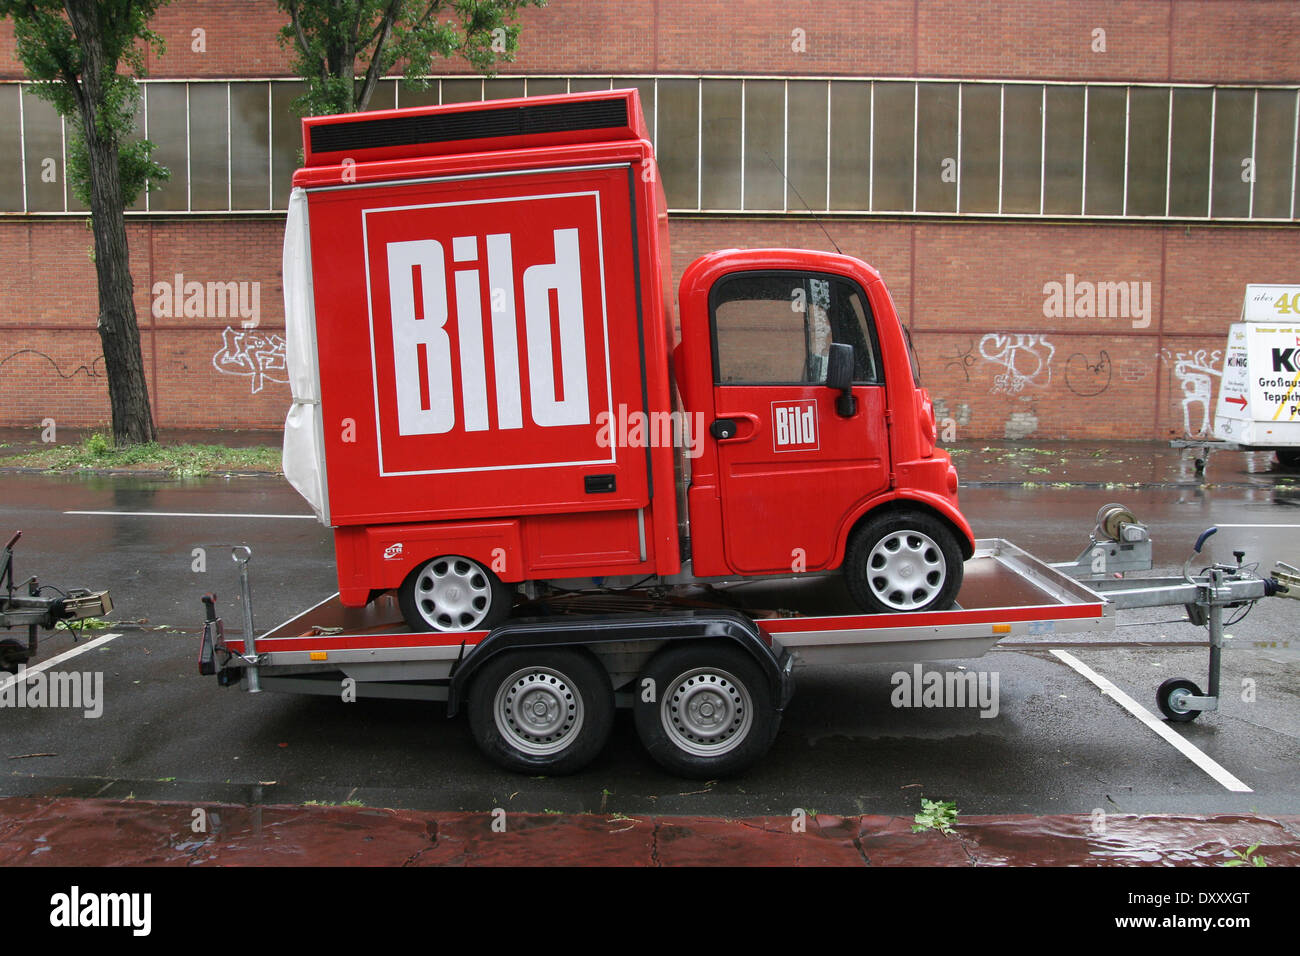 BILD logotipo en un coche rojo corto en Colonia, Alemania. Foto de stock